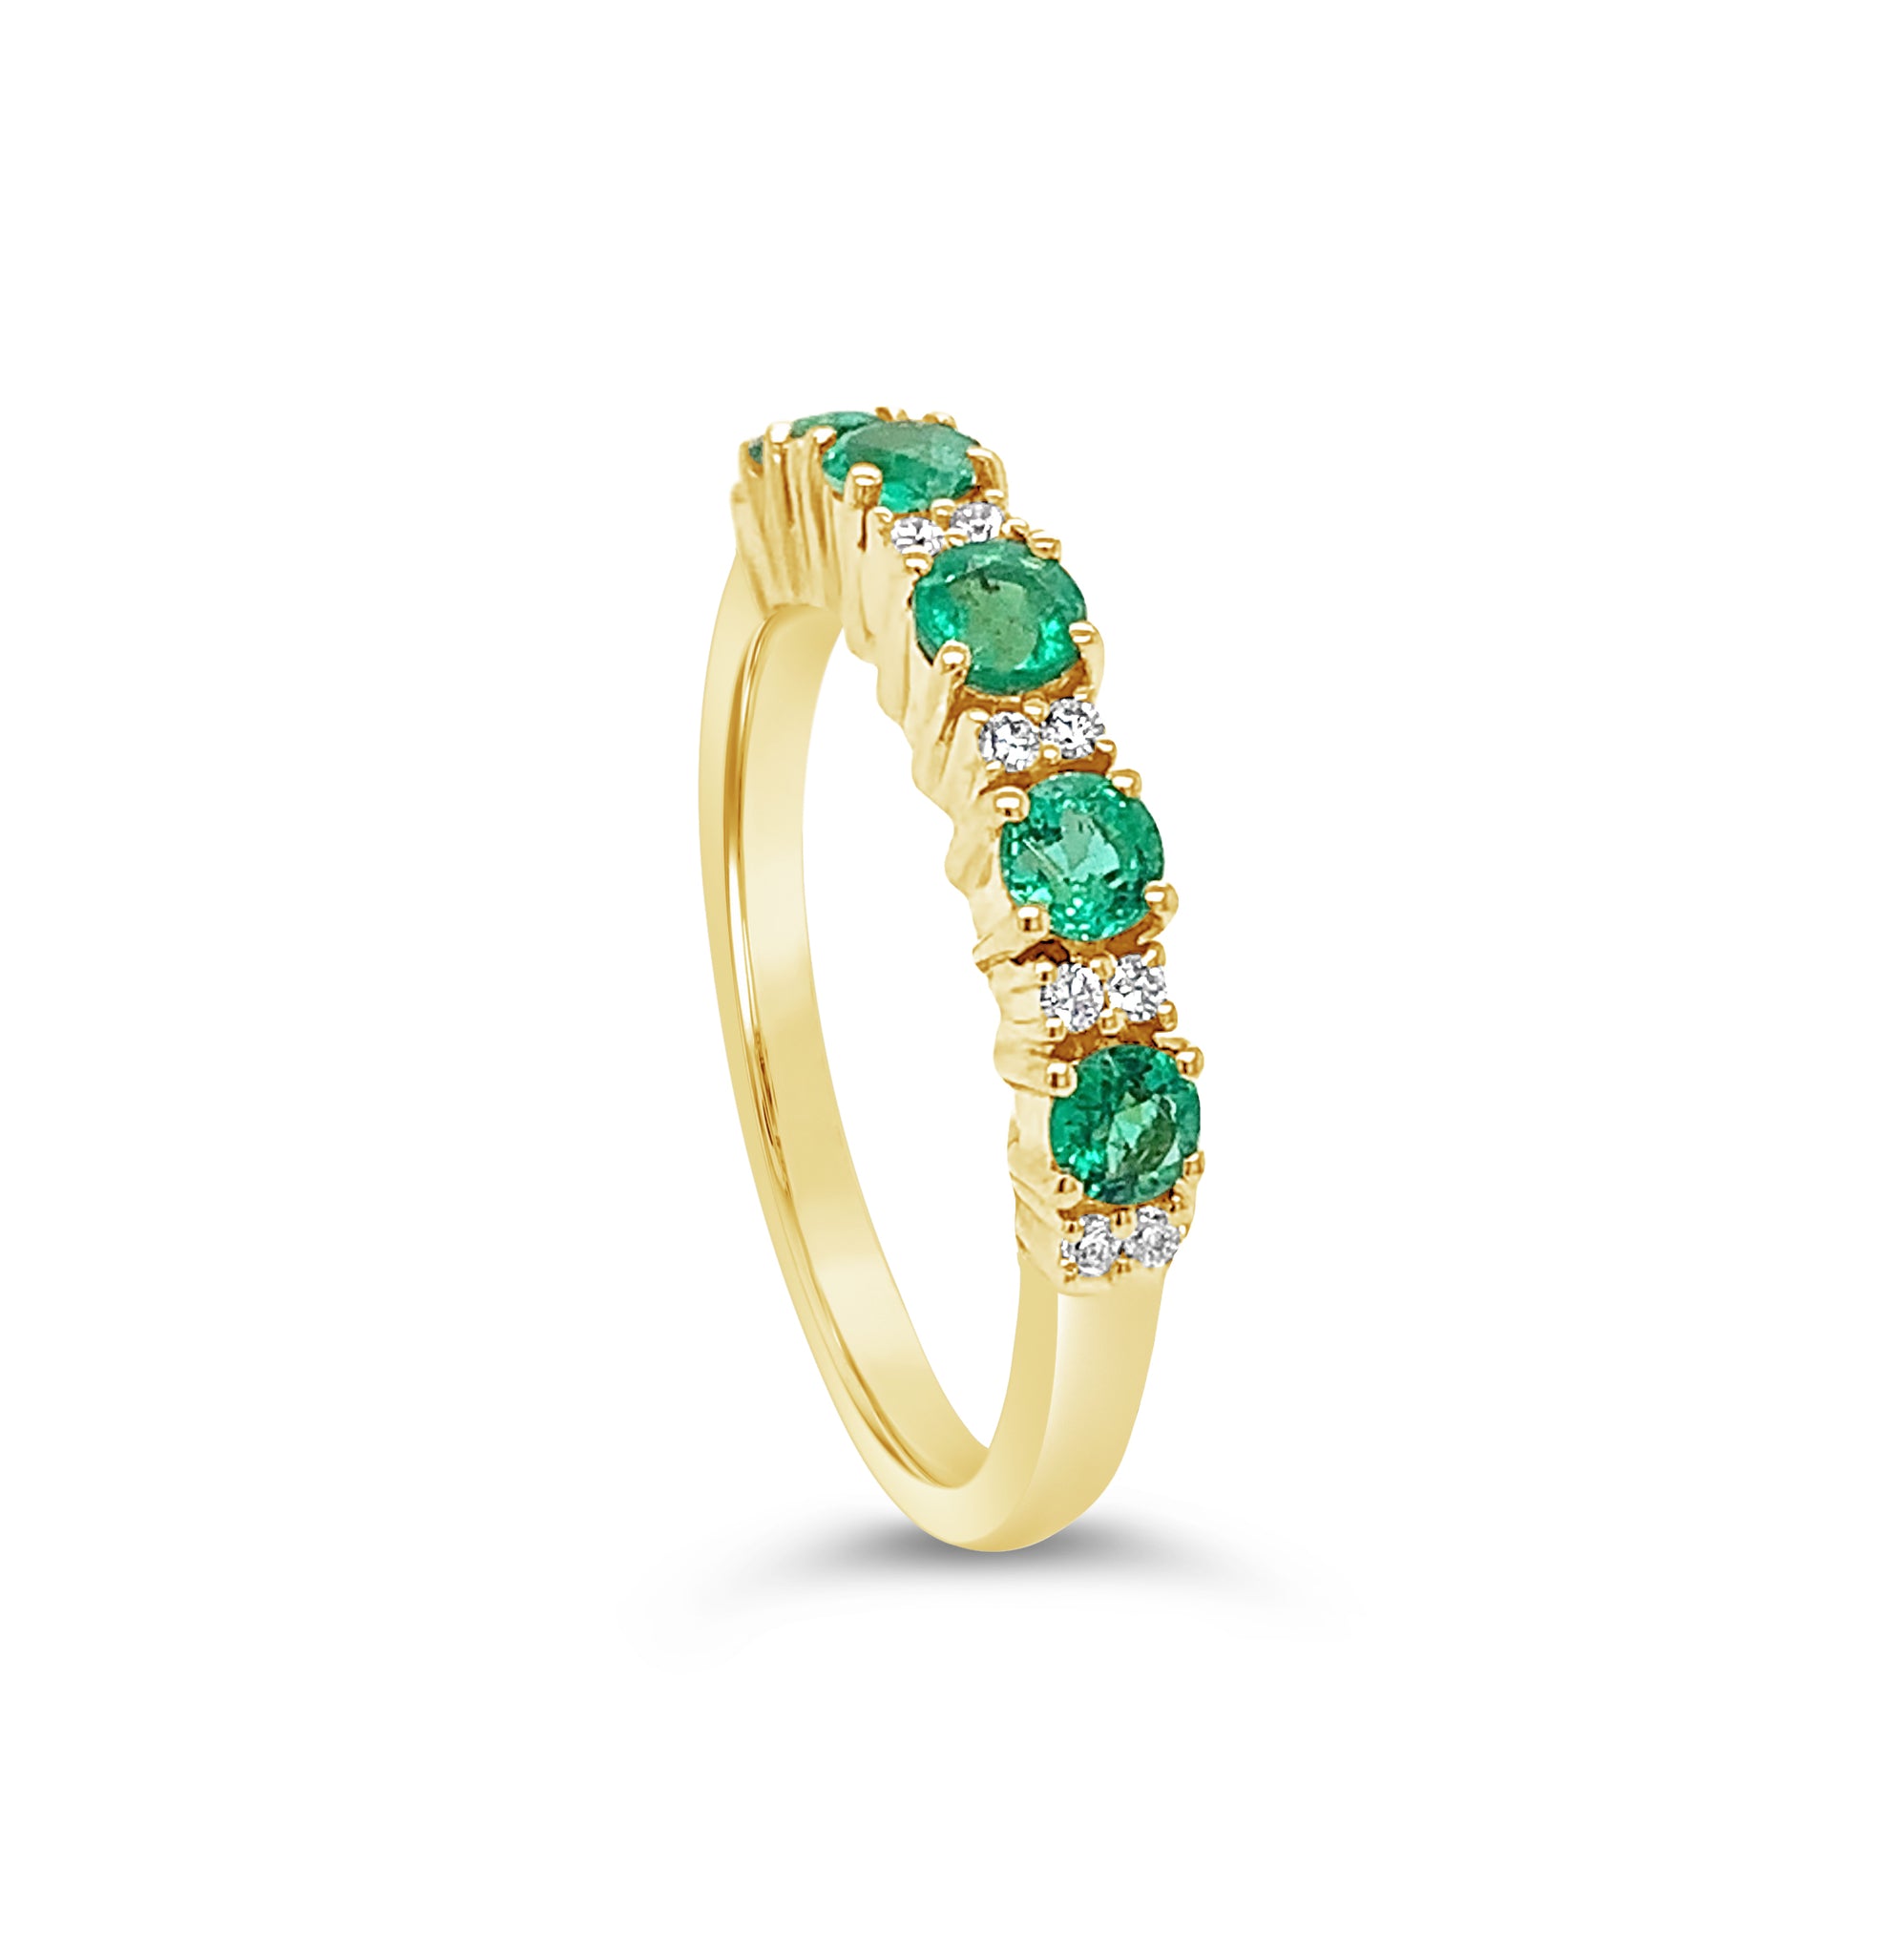 Principessa Sofia Emerald Ring